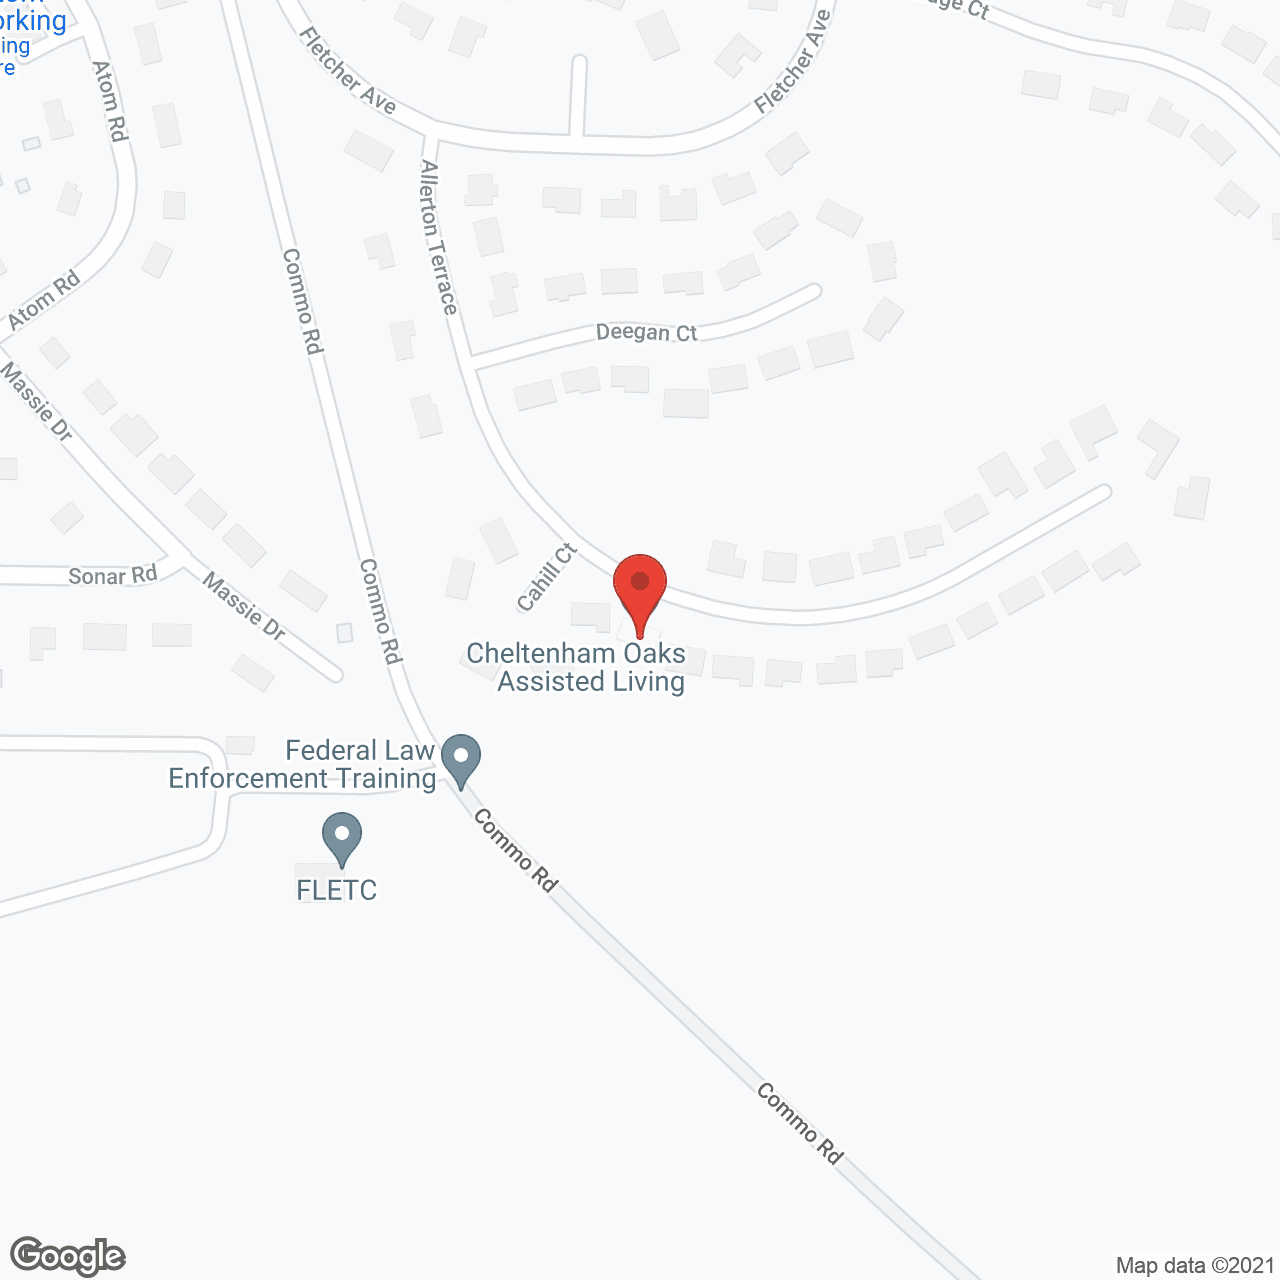 Cheltenham Oaks Assisted Living in google map